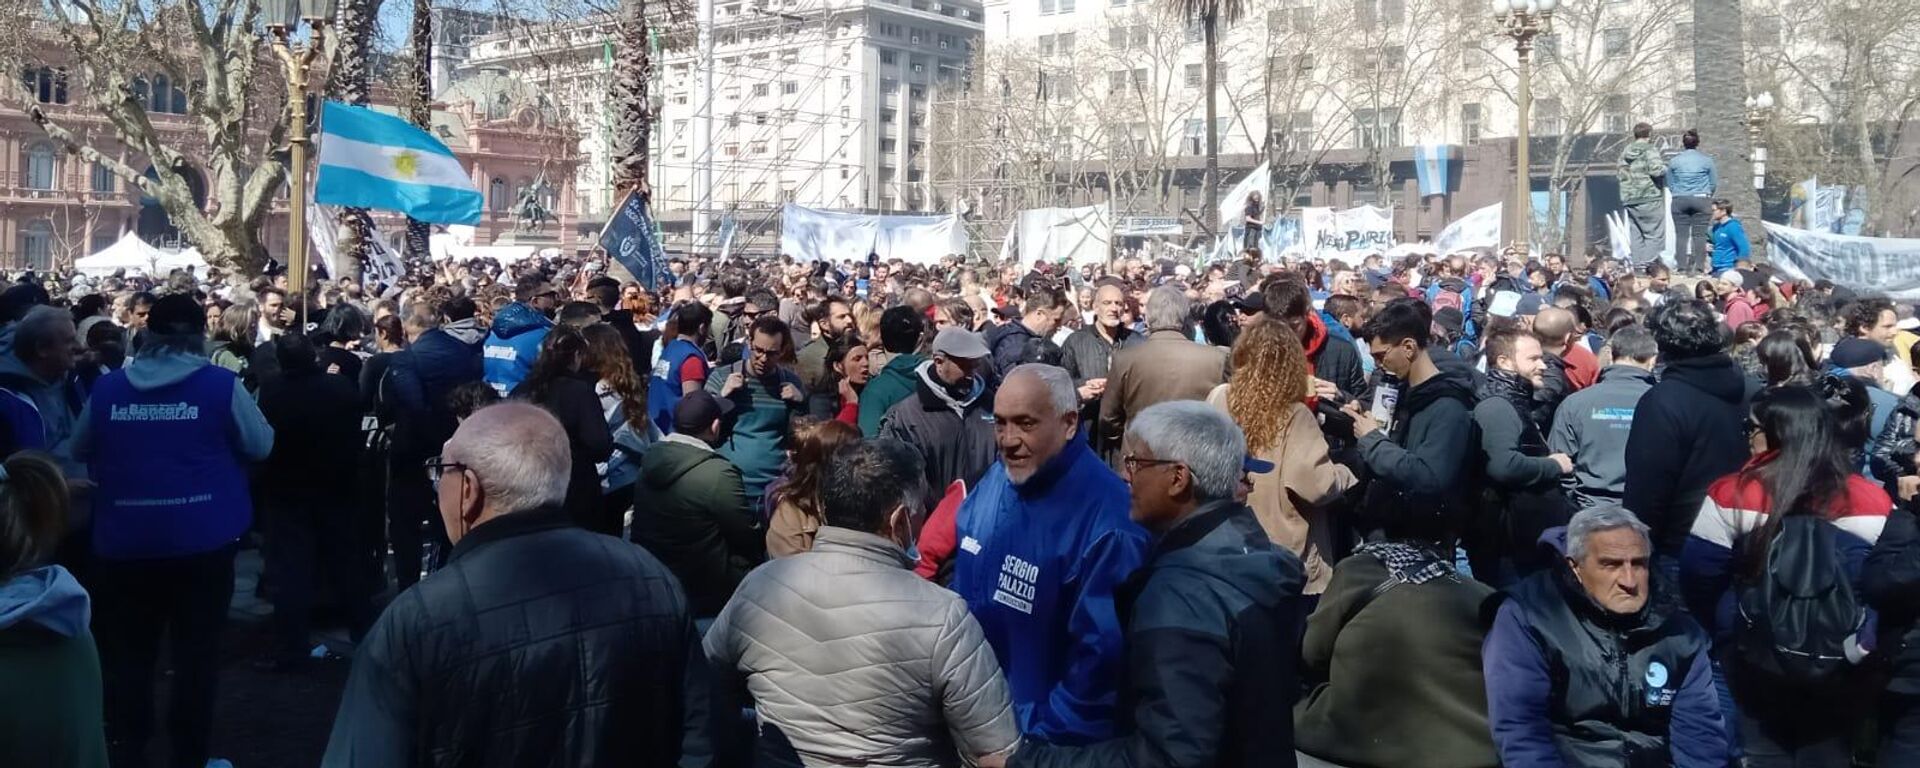 Concentración en la Plaza de Mayo en respaldo a la vicepresidenta Cristina Fernández de Kirchner. - Sputnik Mundo, 1920, 02.09.2022